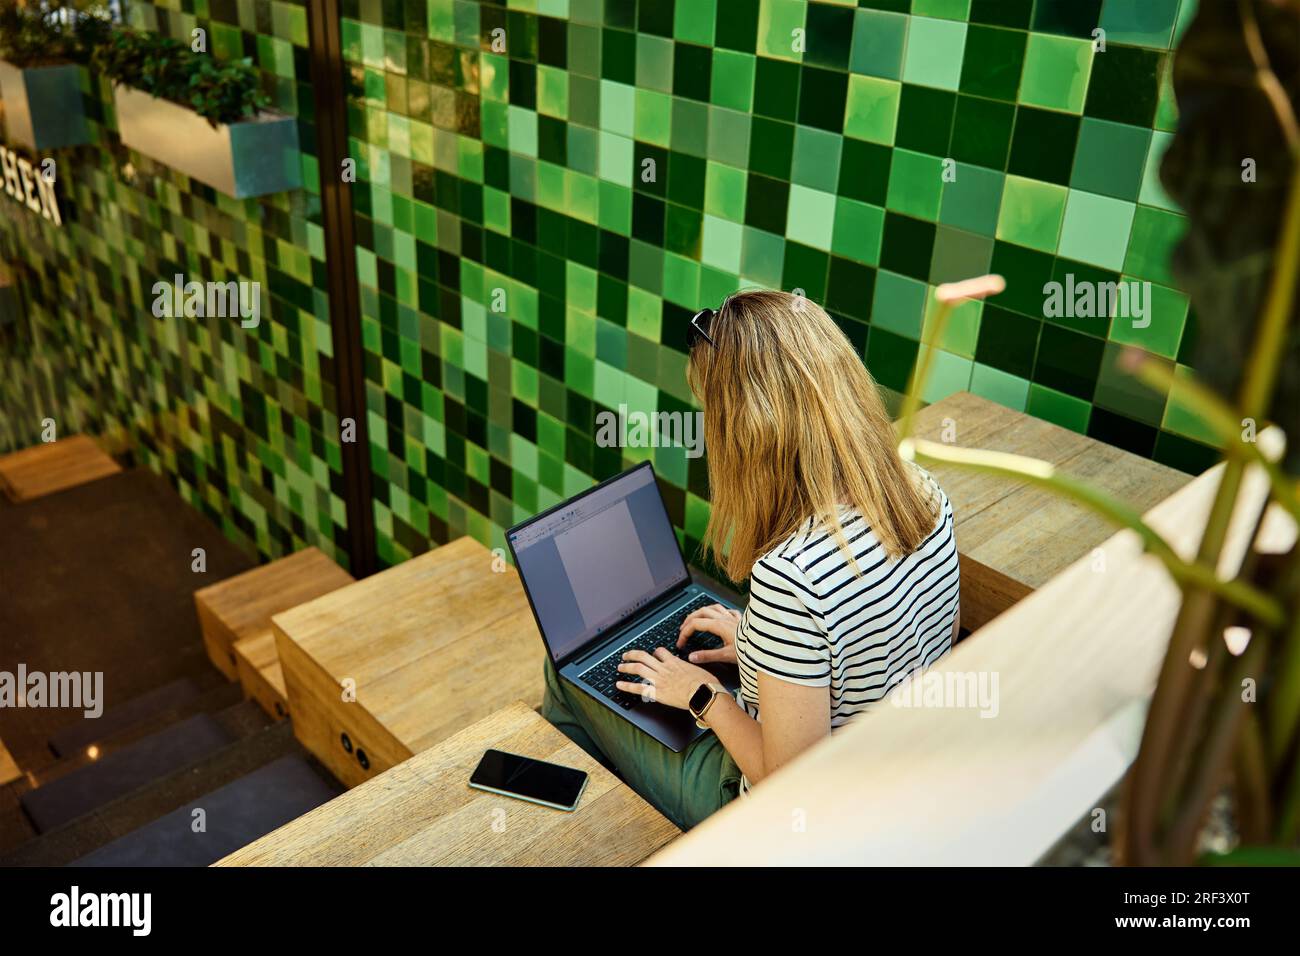 Frau, die mit einem Laptop arbeitet und mit grünen Pflanzen zusammenarbeitet. Weibliche Freiberuflerin, die auf der Laptop-Tastatur tippt. Online-Arbeit im Café Stockfoto